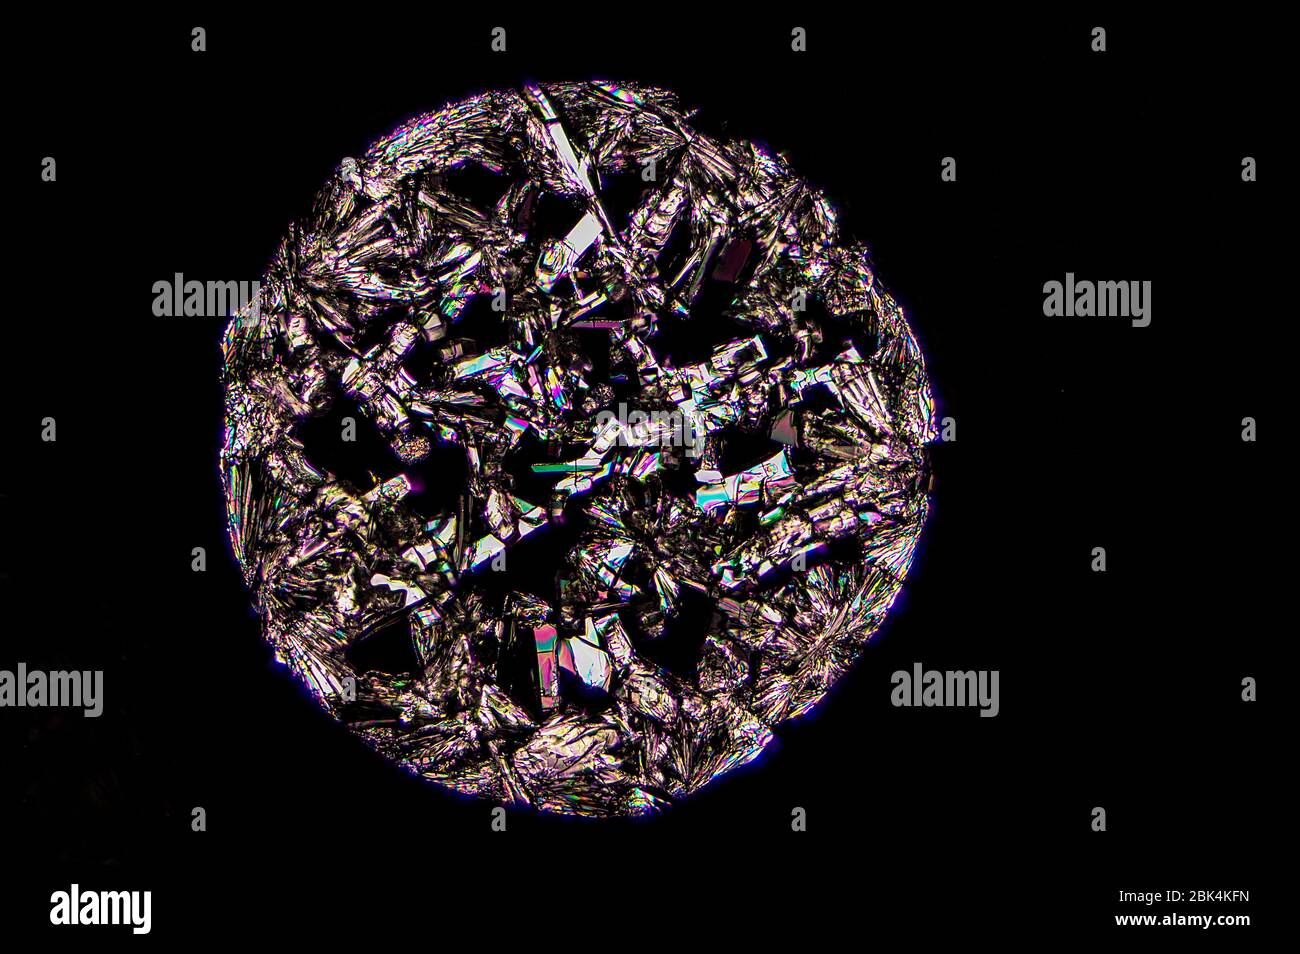 Cristallo di vitamina C osservato sotto microscopia a luce polarizzata Foto Stock